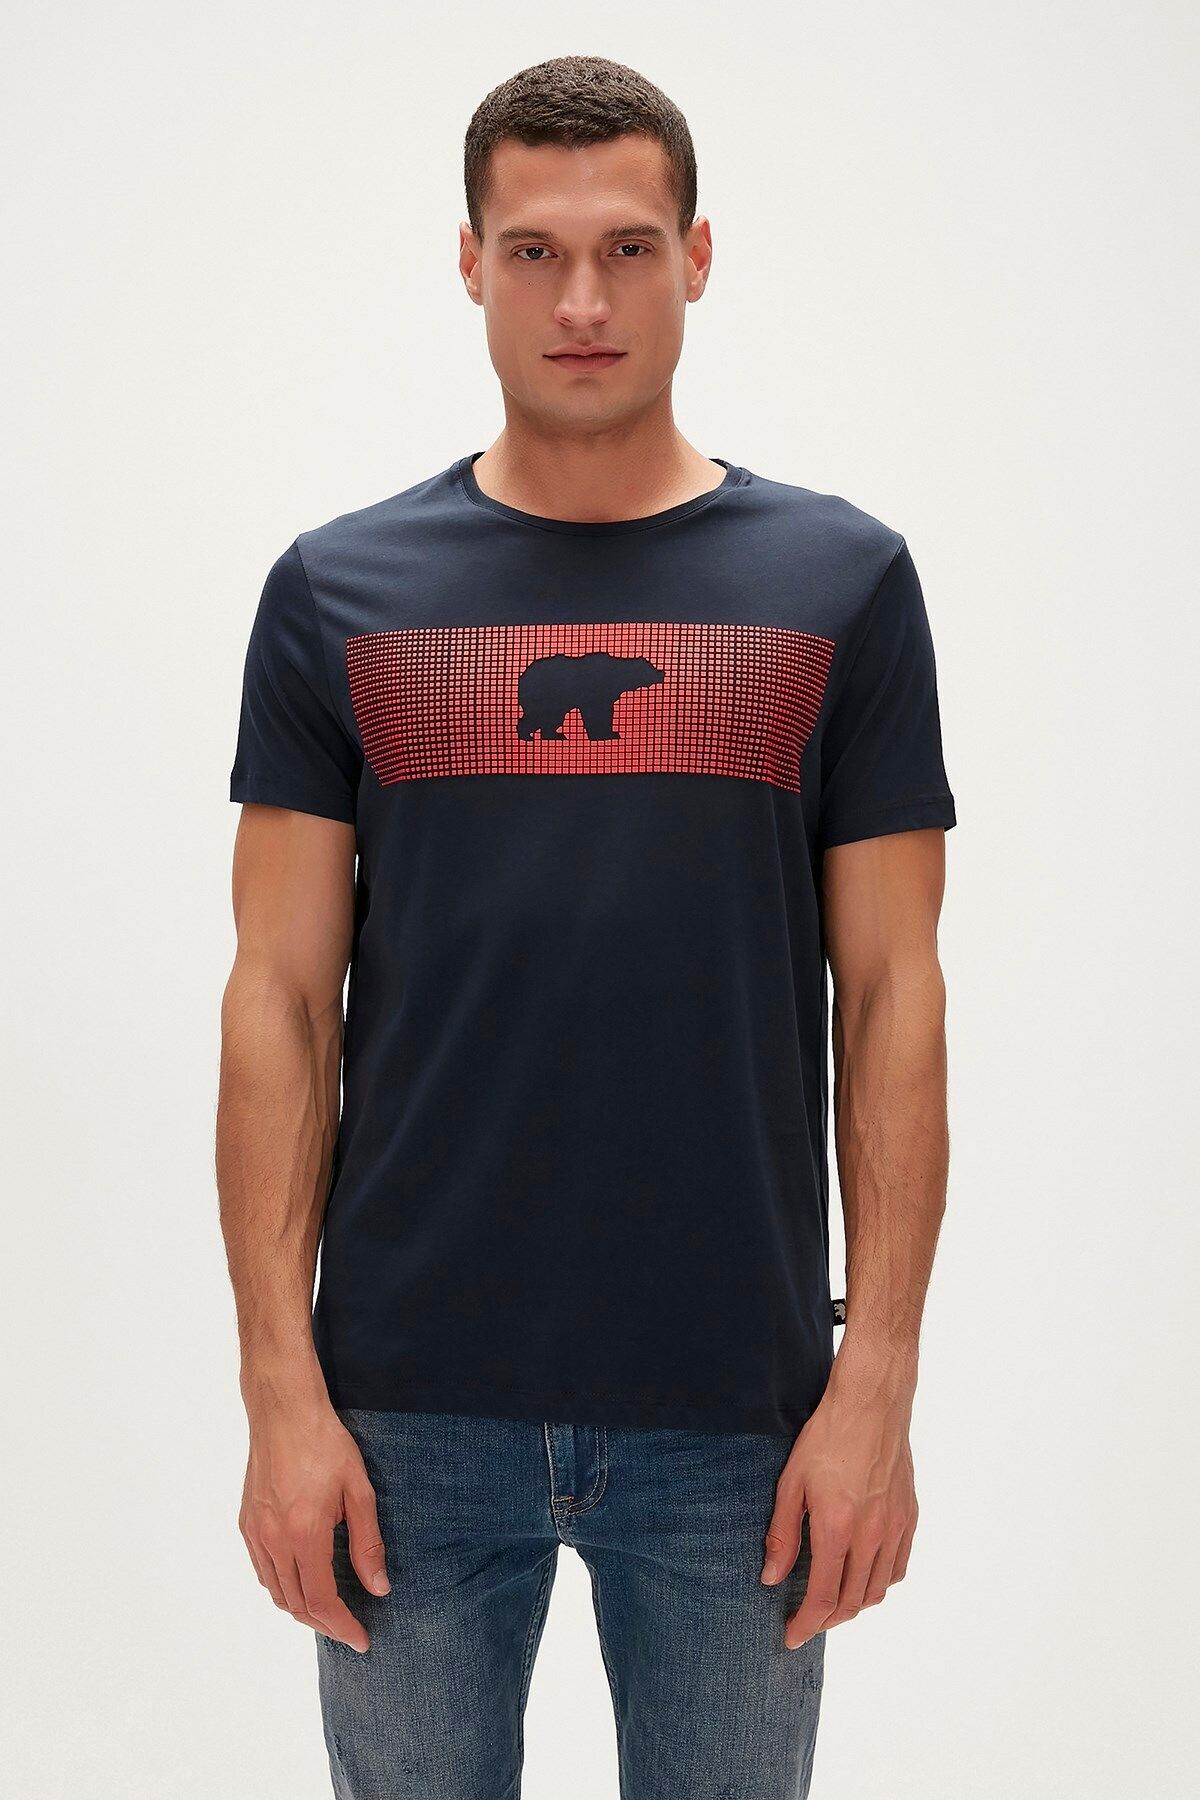 Bad Bear 20.01.07.024-c07 Fancy Erkek T-shirt